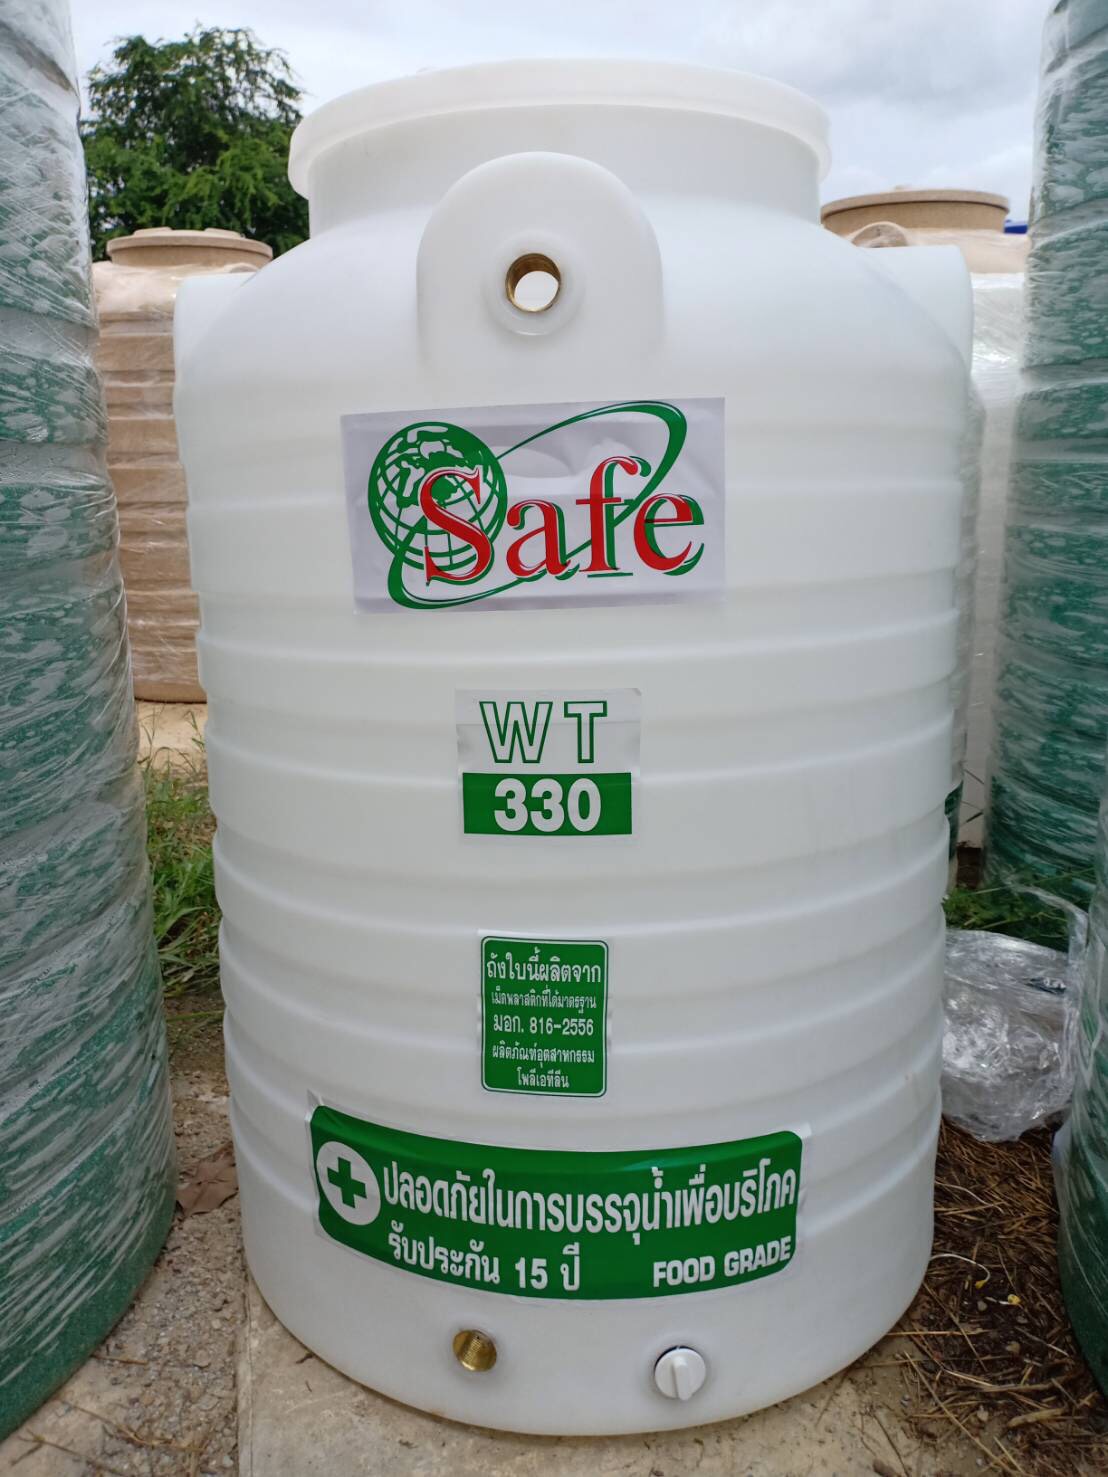 ถังเก็บน้ำ 330 ลิตร สีขาว ยี่ห้อ Safe ถังเก็บน้ำบนดินพีอี มอก.816-2556 ส่งฟรีกรุงเทพและปริมณฑล ต่างจังหวัดมีค่าขนส่ง มาตรฐาน มอก.816-2556 Food Grade